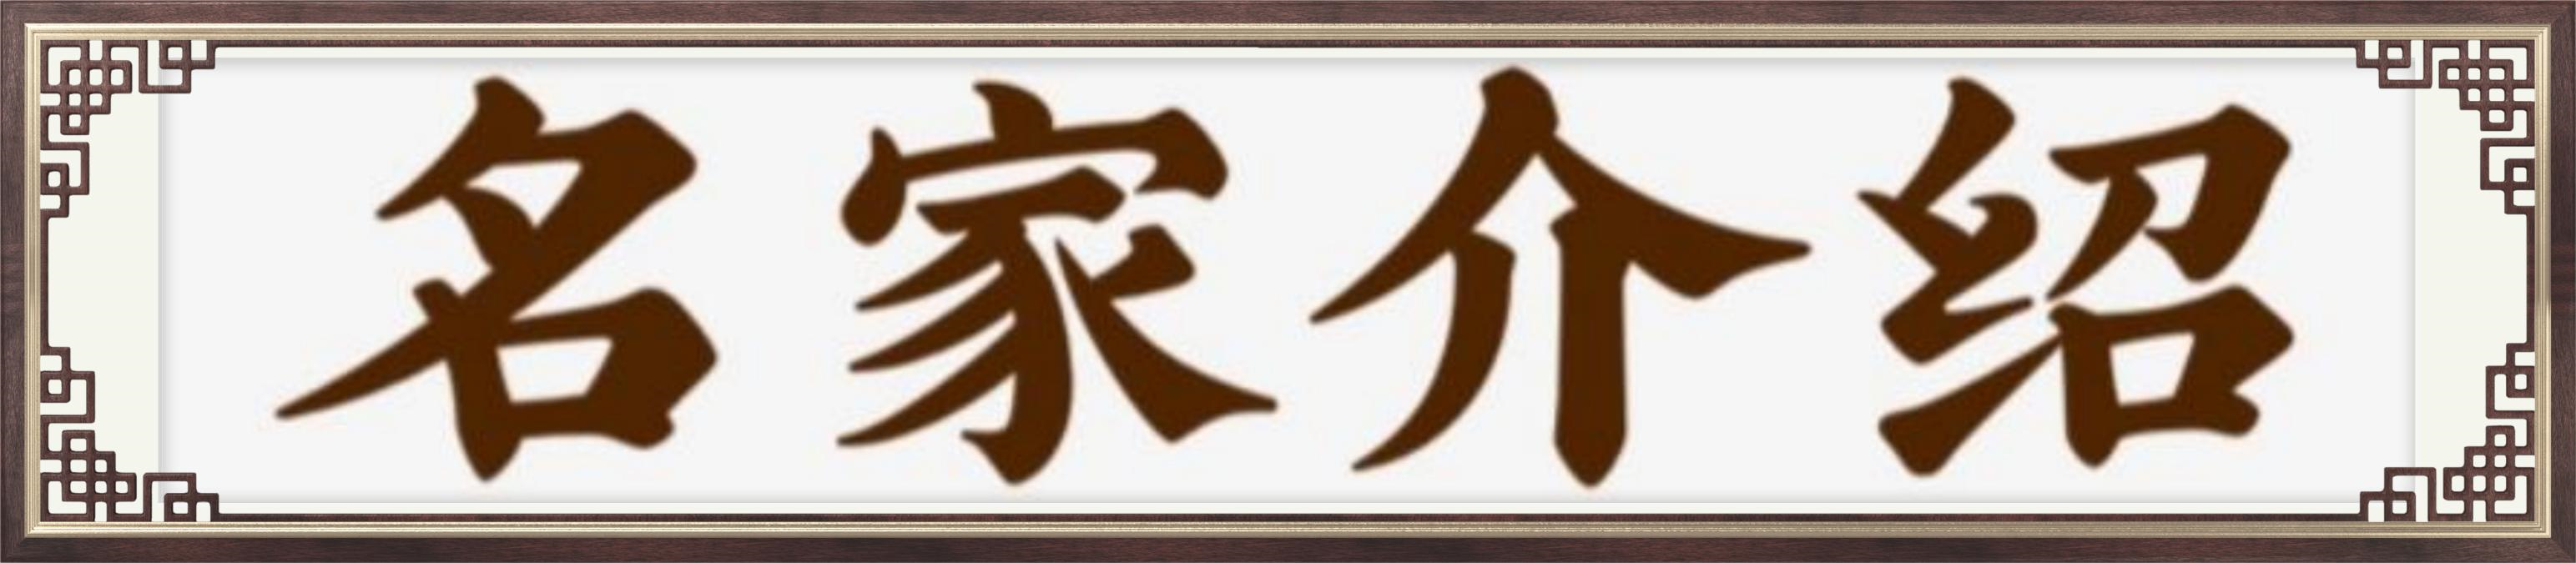 中国艺术传承形象大使司徒惠霞——献礼建军95周年